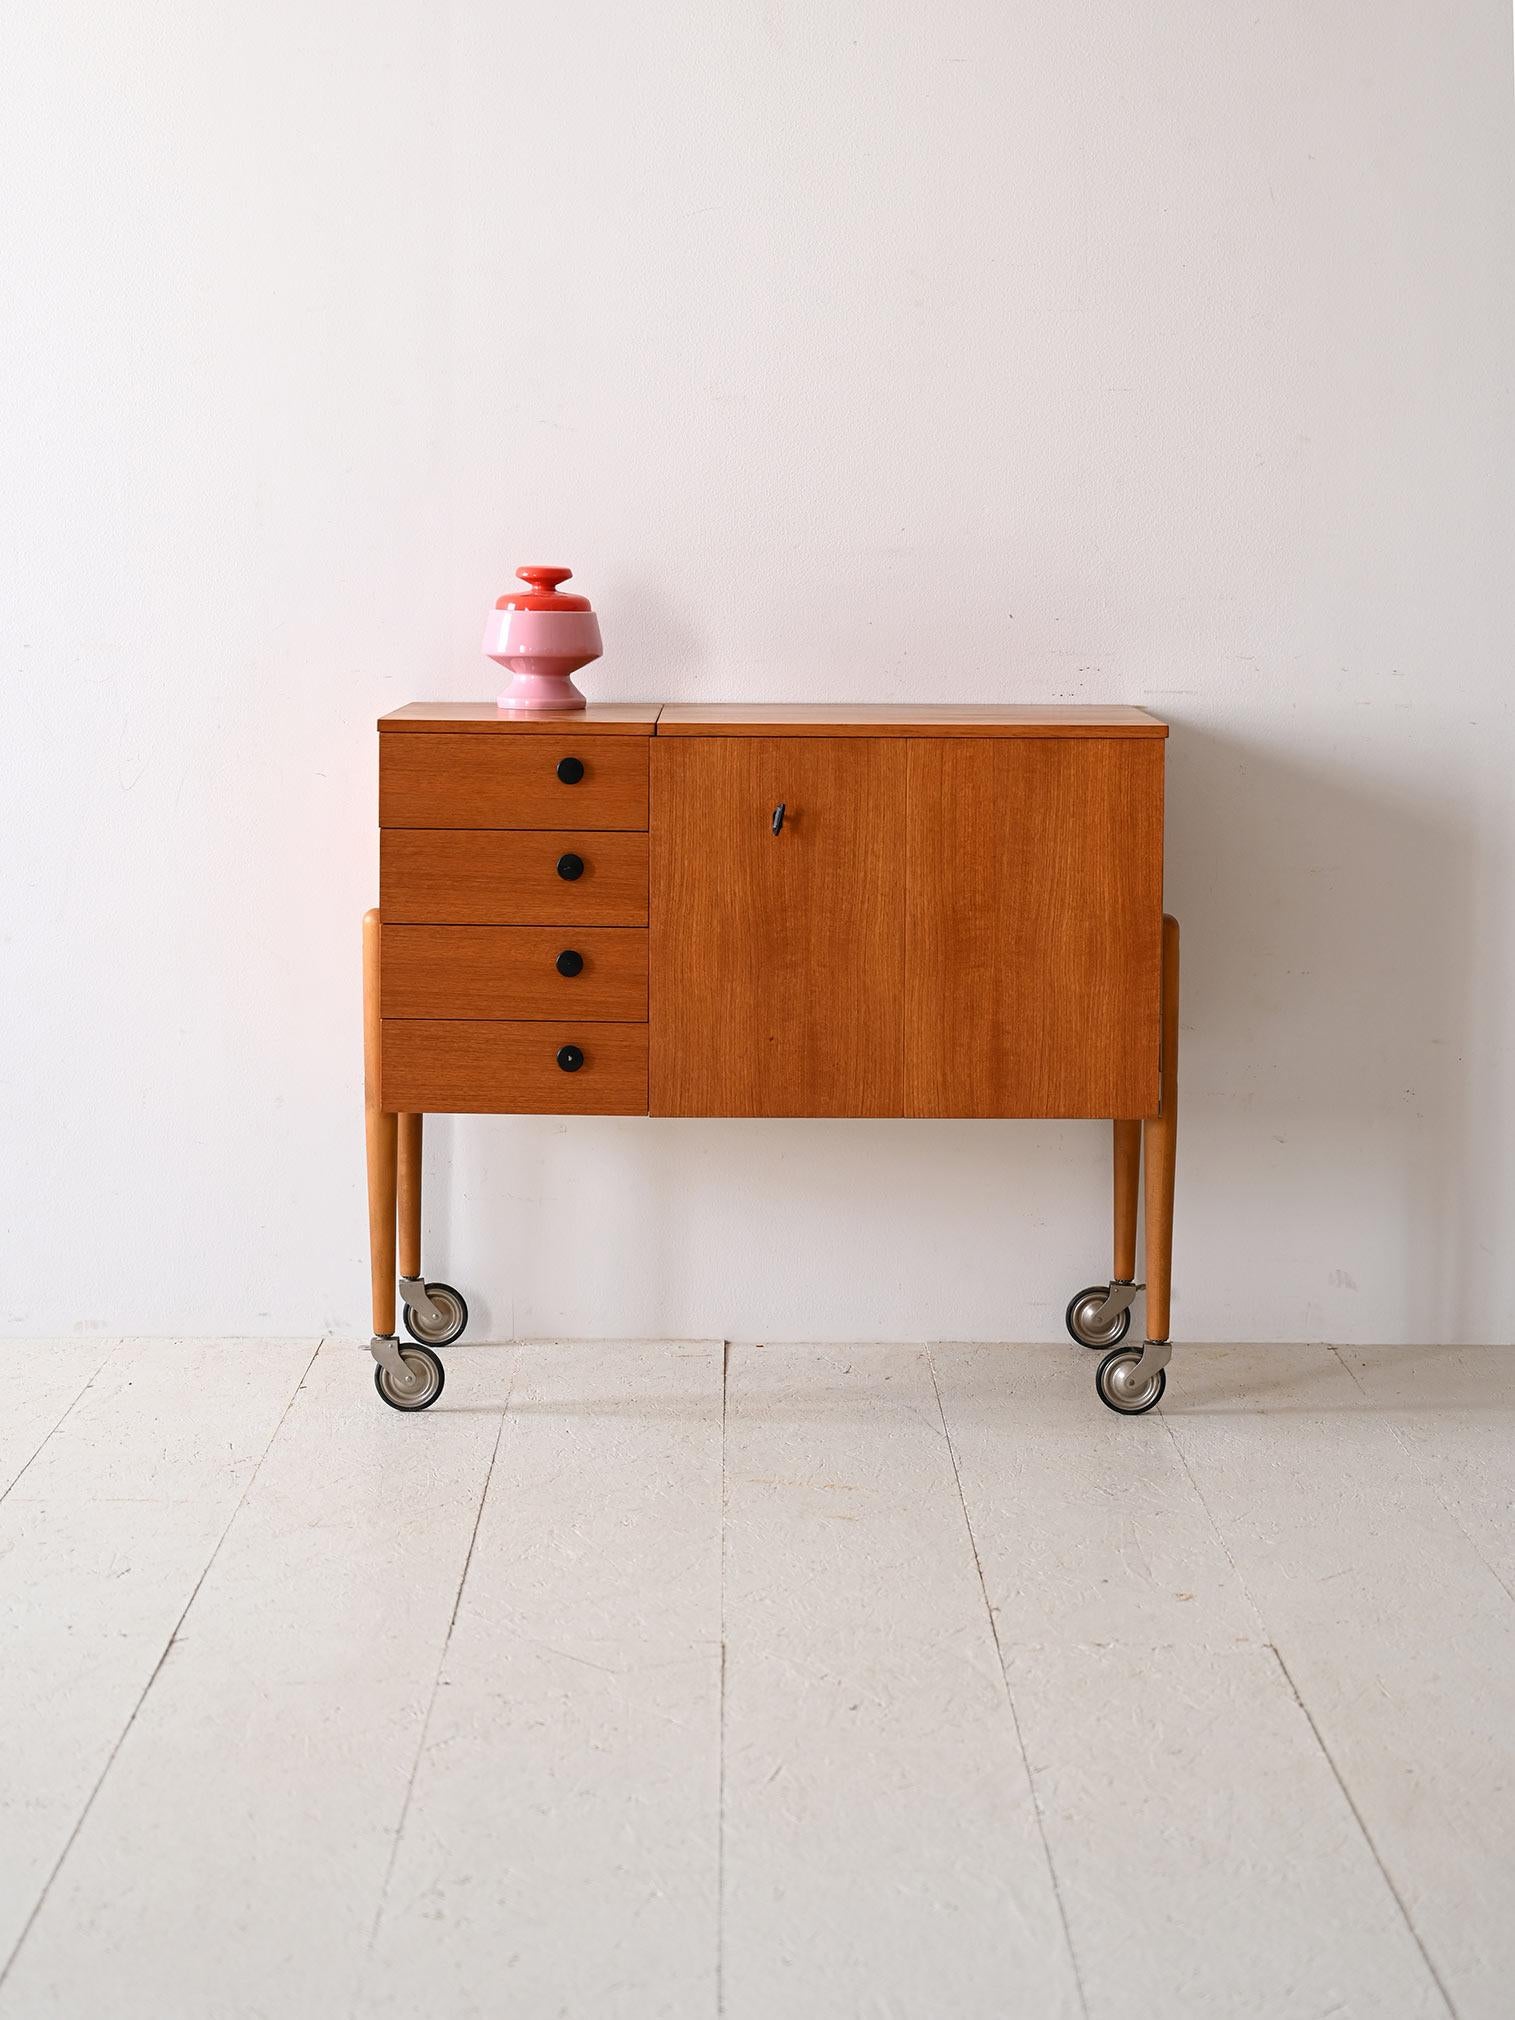 Skandinavischer Schrank auf Rädern aus den 1960er Jahren.

Der Rahmen aus Teakholz und die praktischen Schubladen machen ihn zu einem perfekten Beispiel für funktionelles Design. Die spitz zulaufenden Beine aus Metall und die Gummiräder sind ein